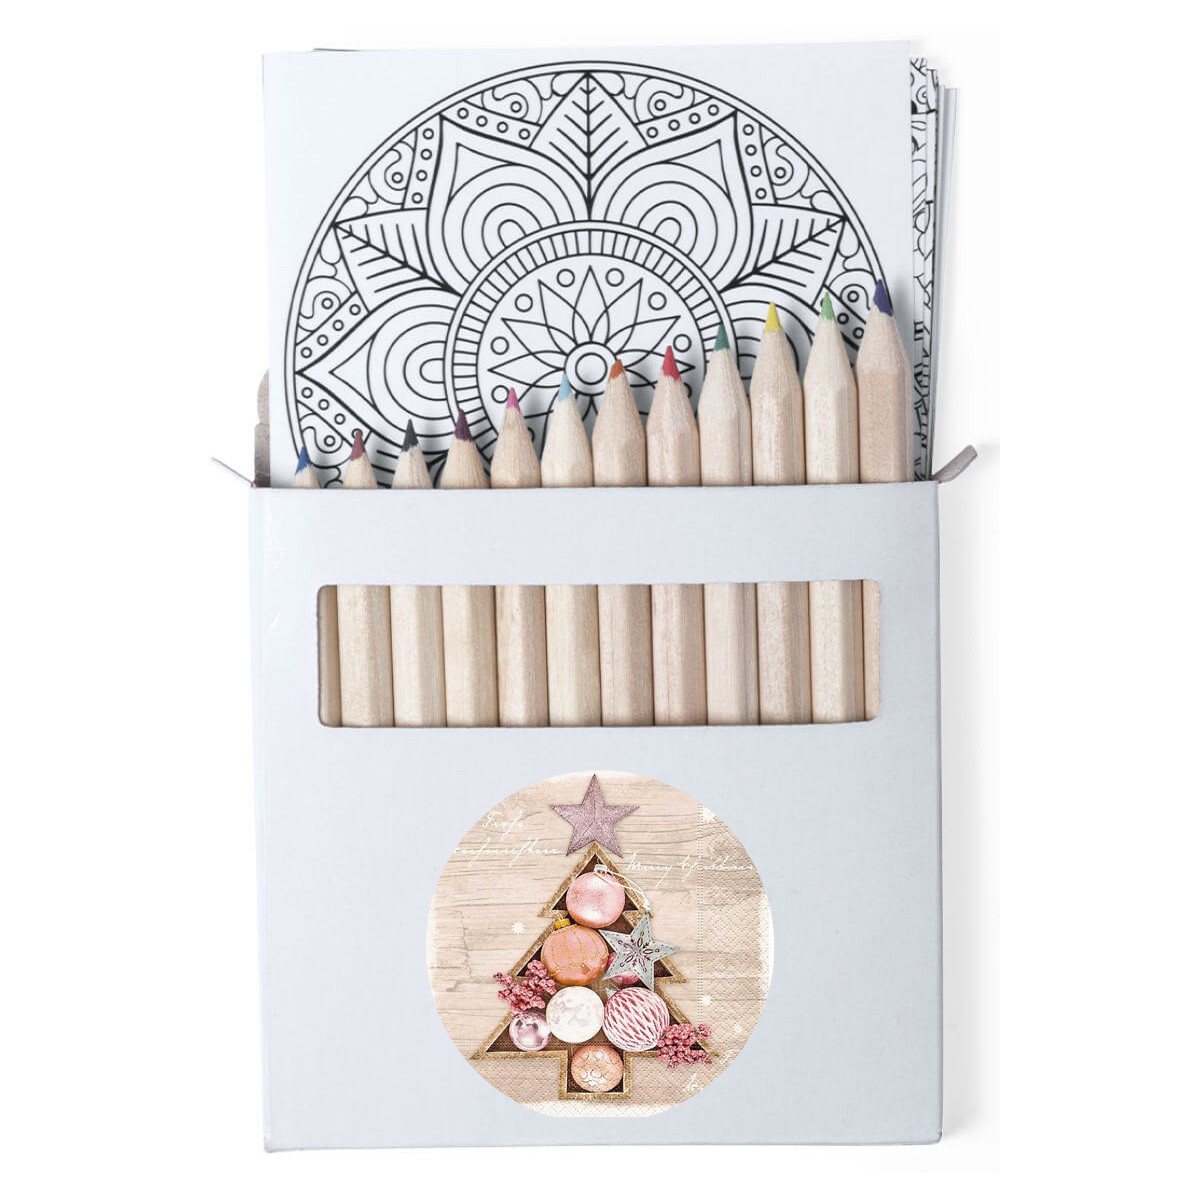 Lápices de colores en caja de cartón con láminas de mandalas y adhesivo personalizable para navidad